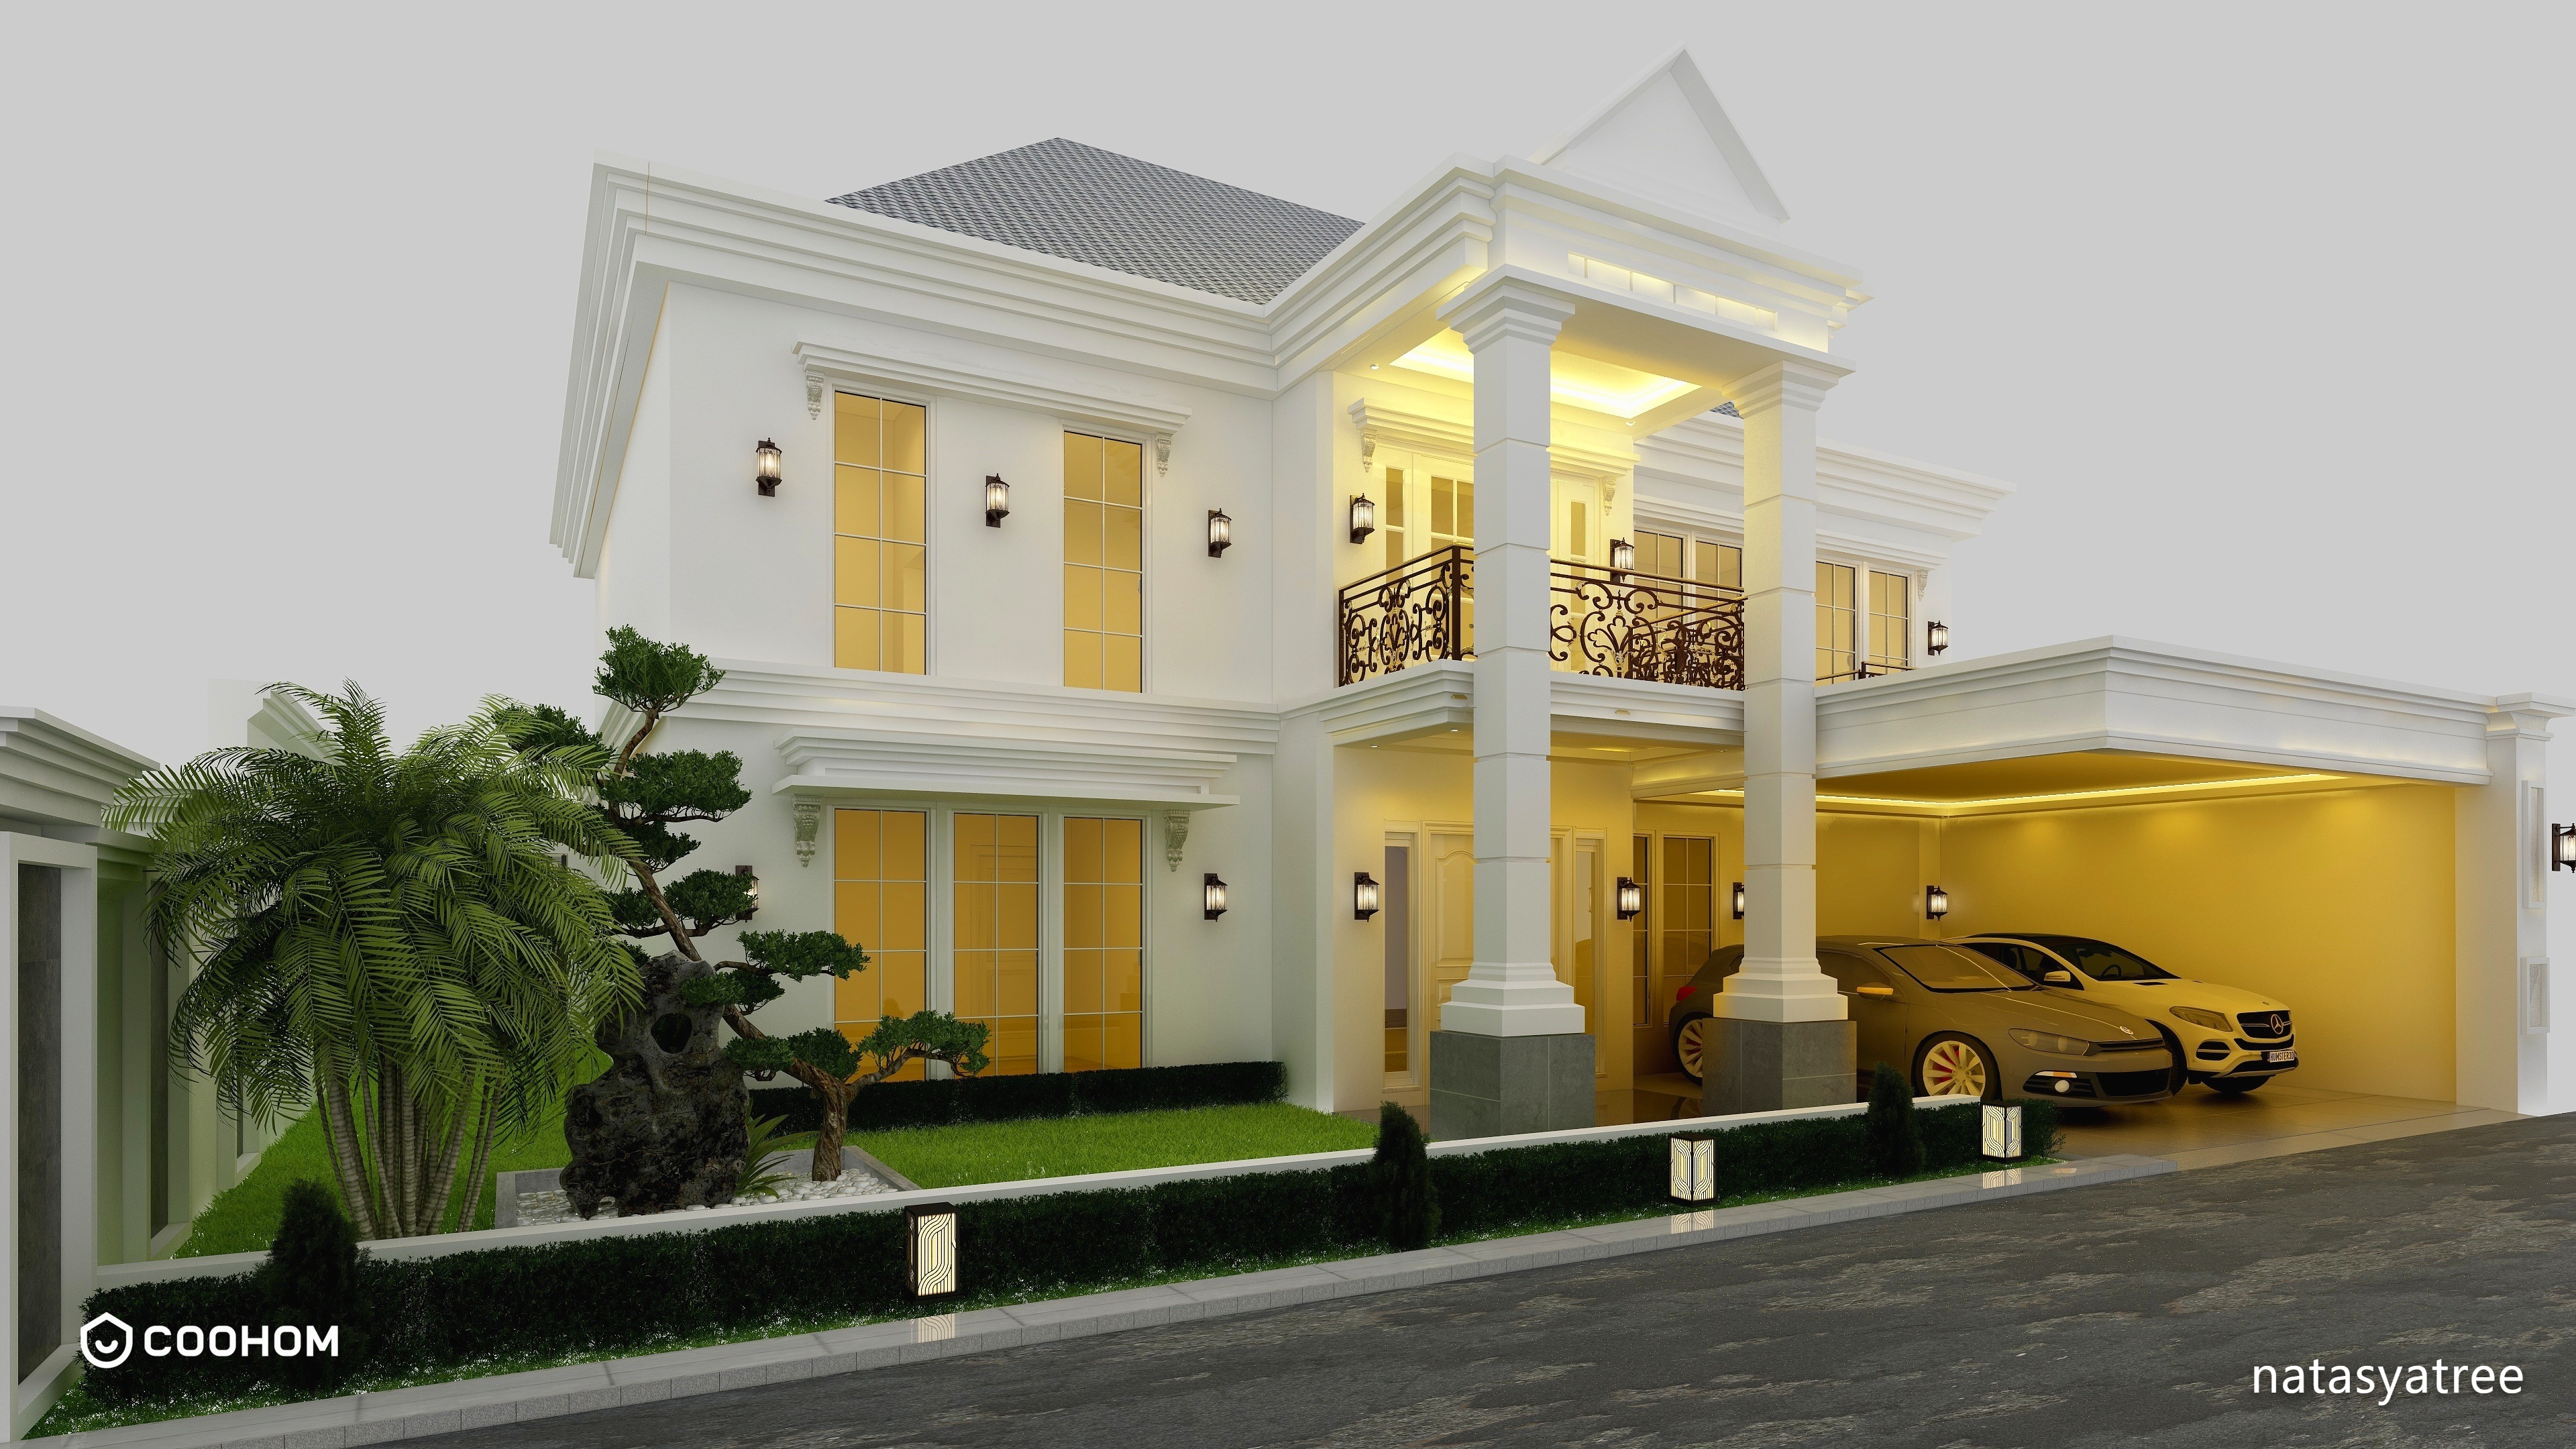 natasyatree的装修设计方案:Rumah mewah 2 lantai